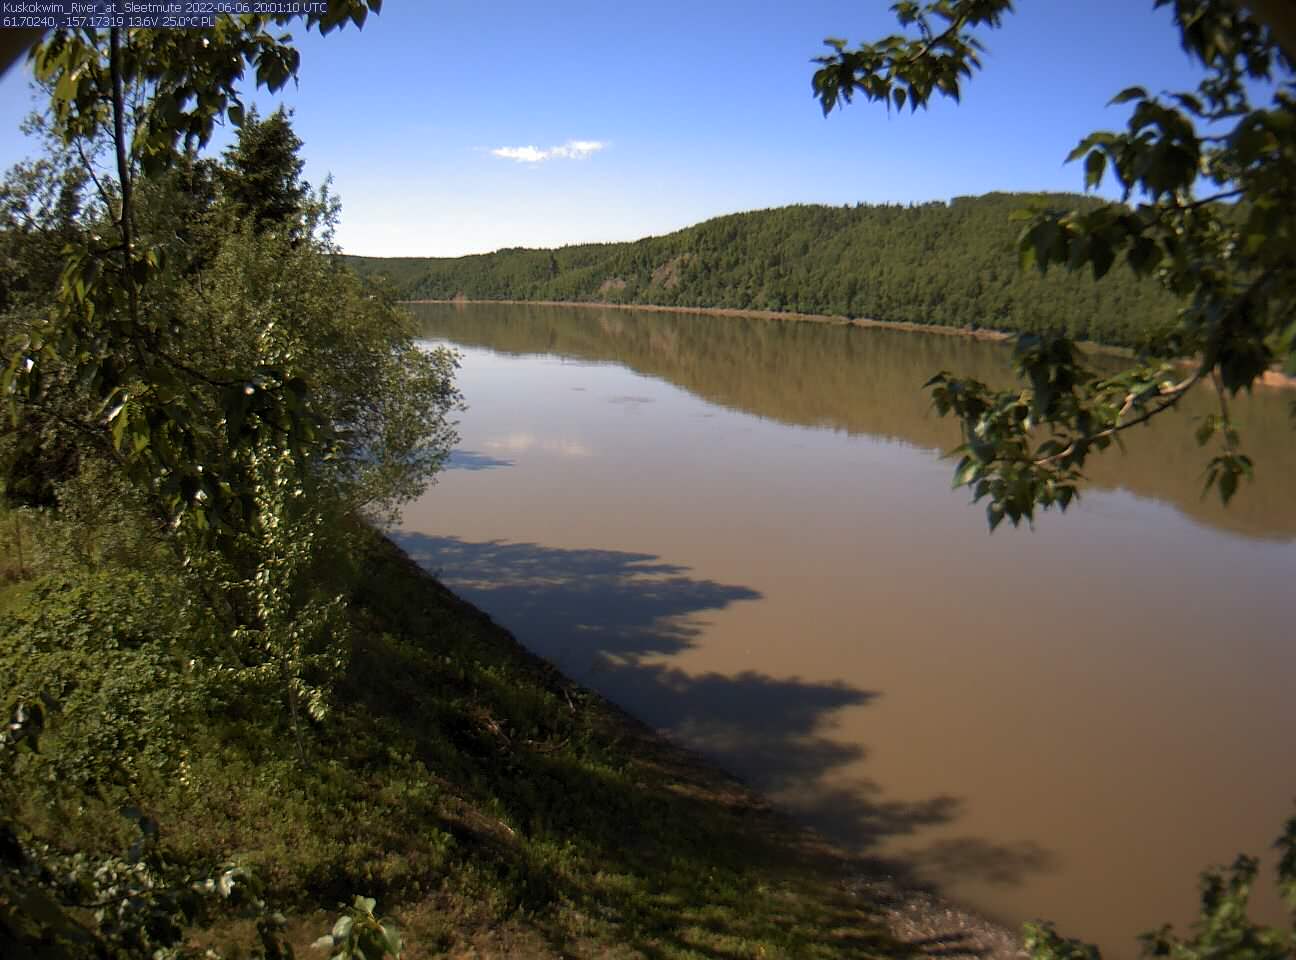 Kuskokwim_River_at_Sleetmute_20220606200111.jpg